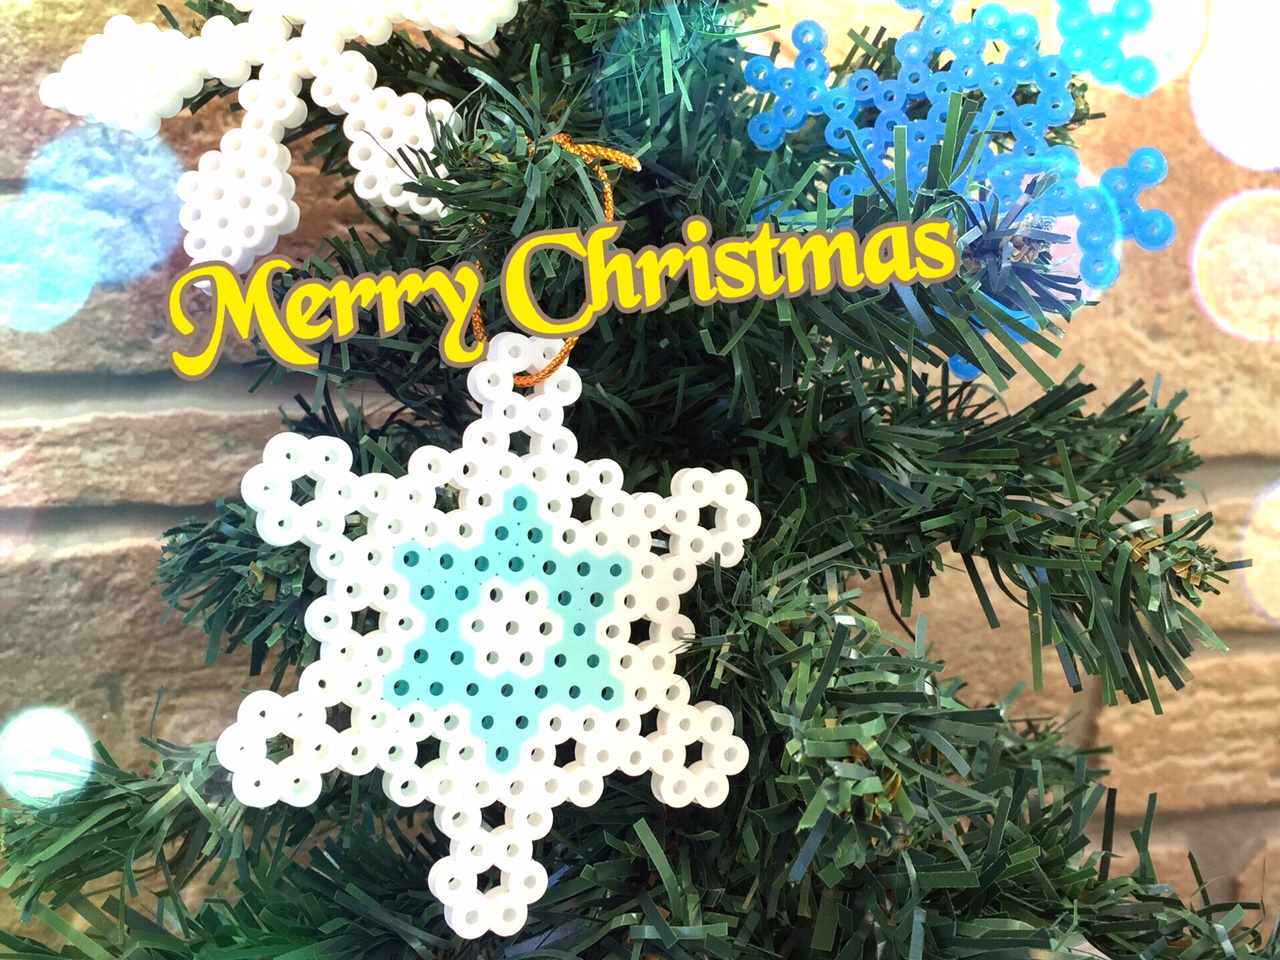 アイロンビーズ雪の結晶の図案と作り方のコツ クリスマス飾りを素敵に のんびりスローな毎日を